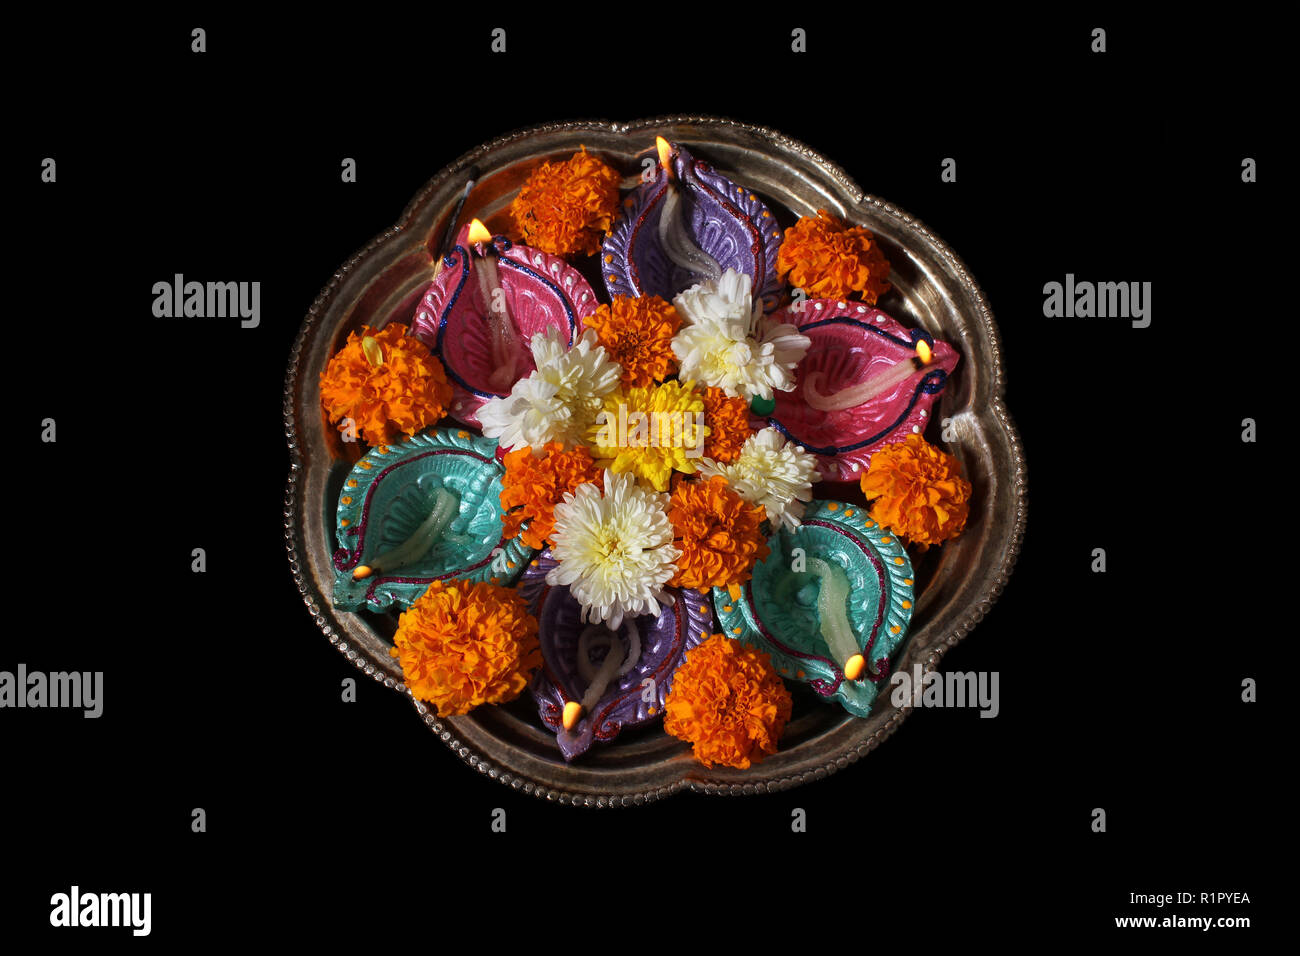 Une plaque utilisée pour les rituels hindous traditionnels avec des lampes et des fleurs pendant le festival du Diwali en Inde. Banque D'Images